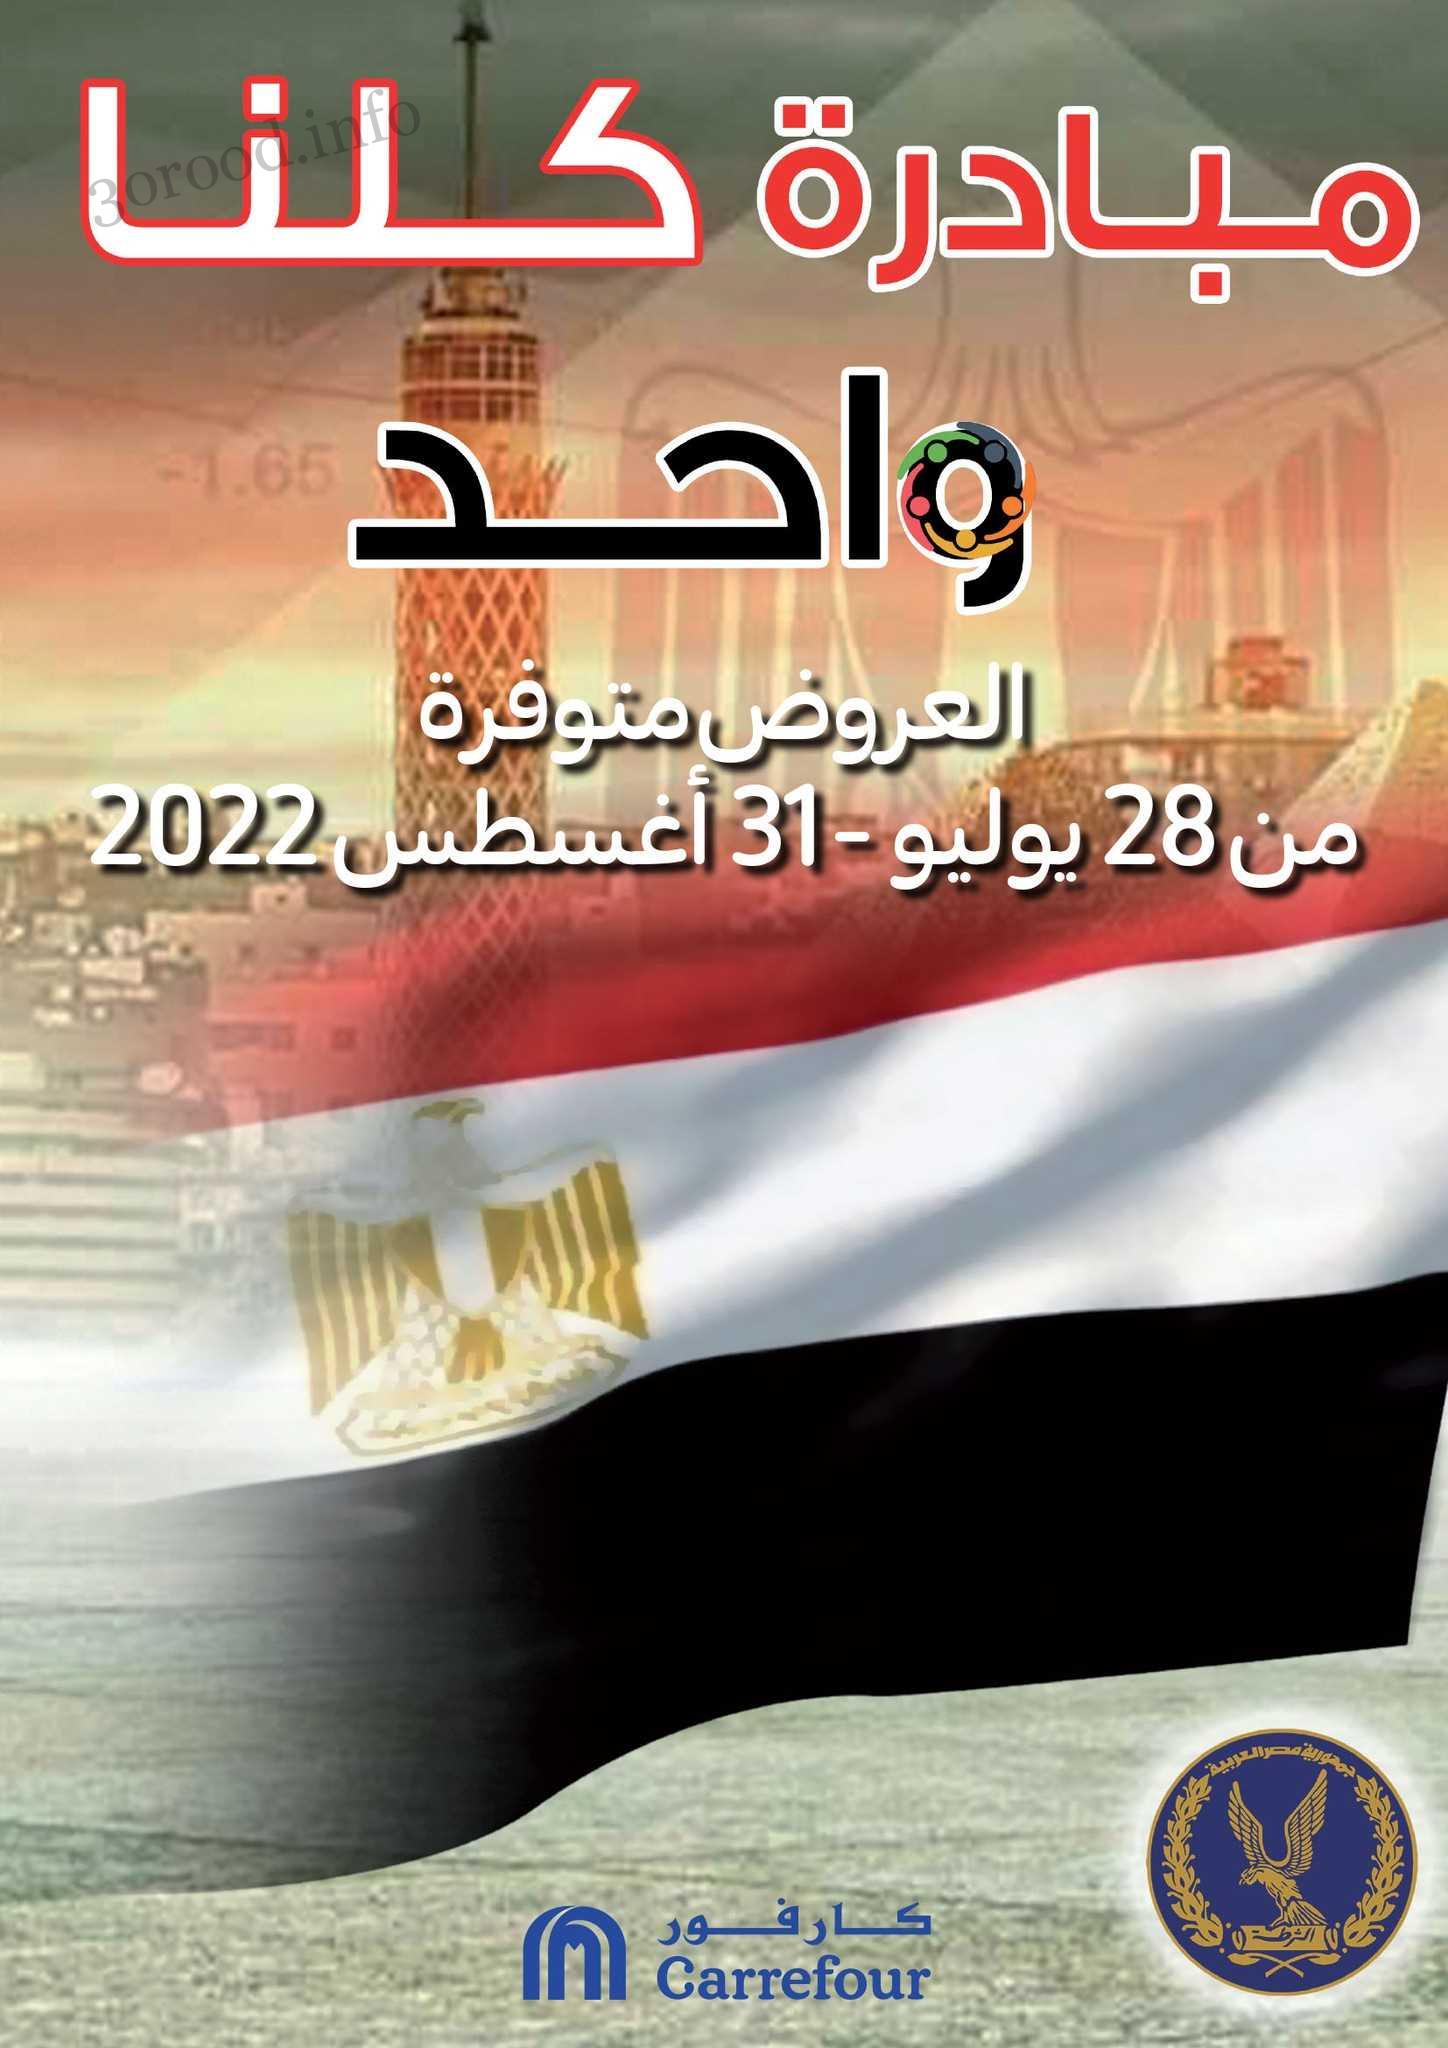 عروض كارفور مصر 28 يوليو حتى 31 اغسطس 2022 كلنا واحد